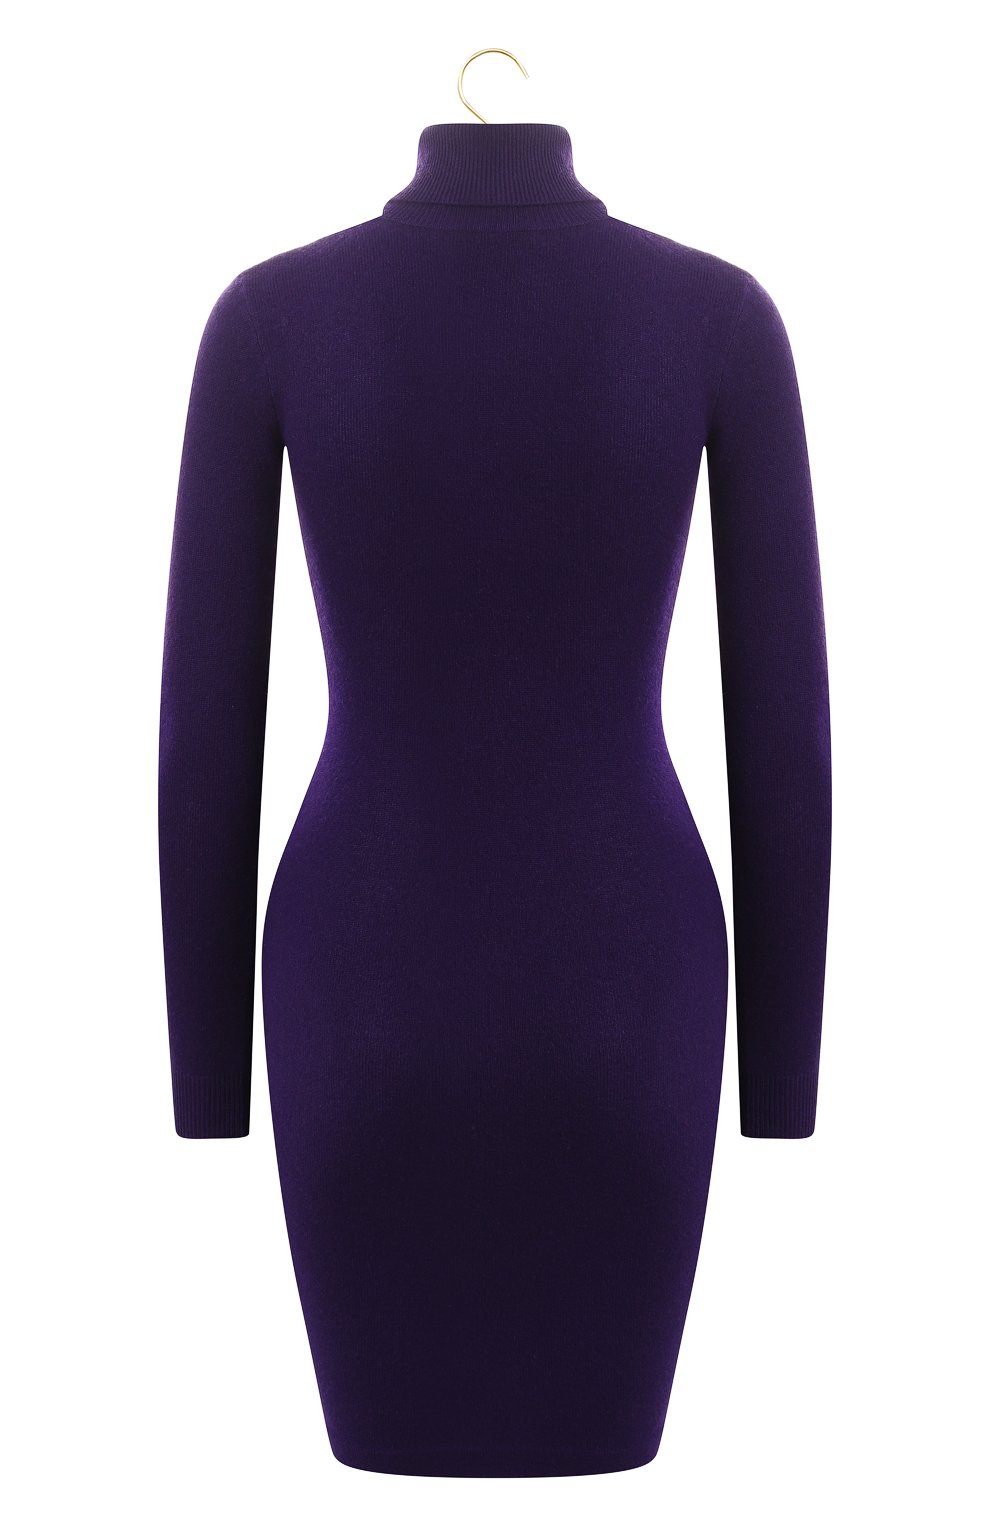 Кашемировое платье | Ralph Lauren | Фиолетовый - 2